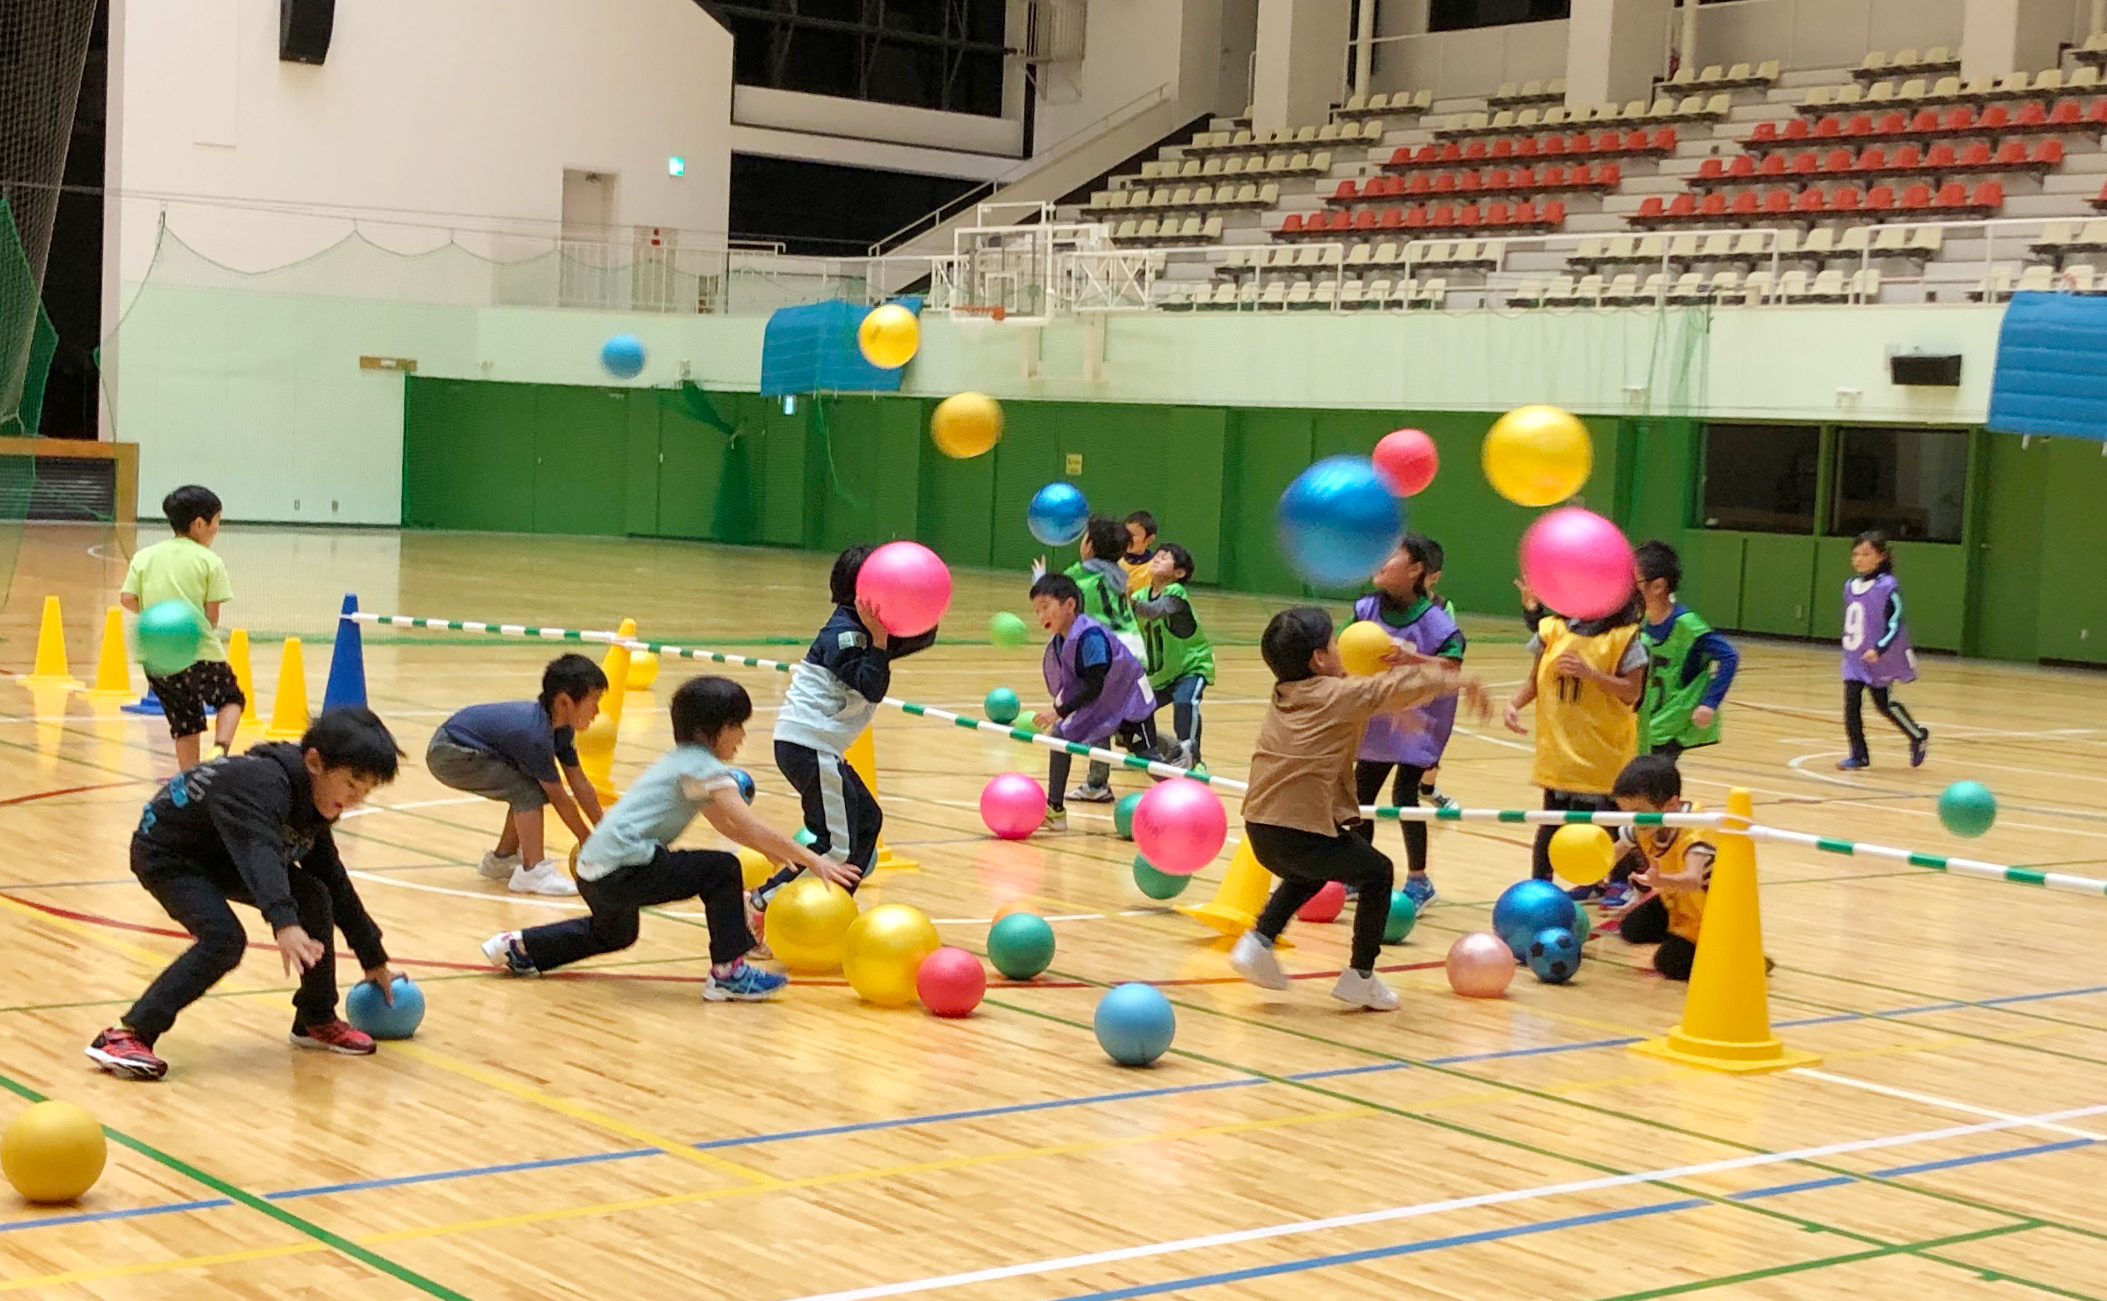 ボールゲーム教室 松本山雅スポーツクラブ オフィシャルサイト